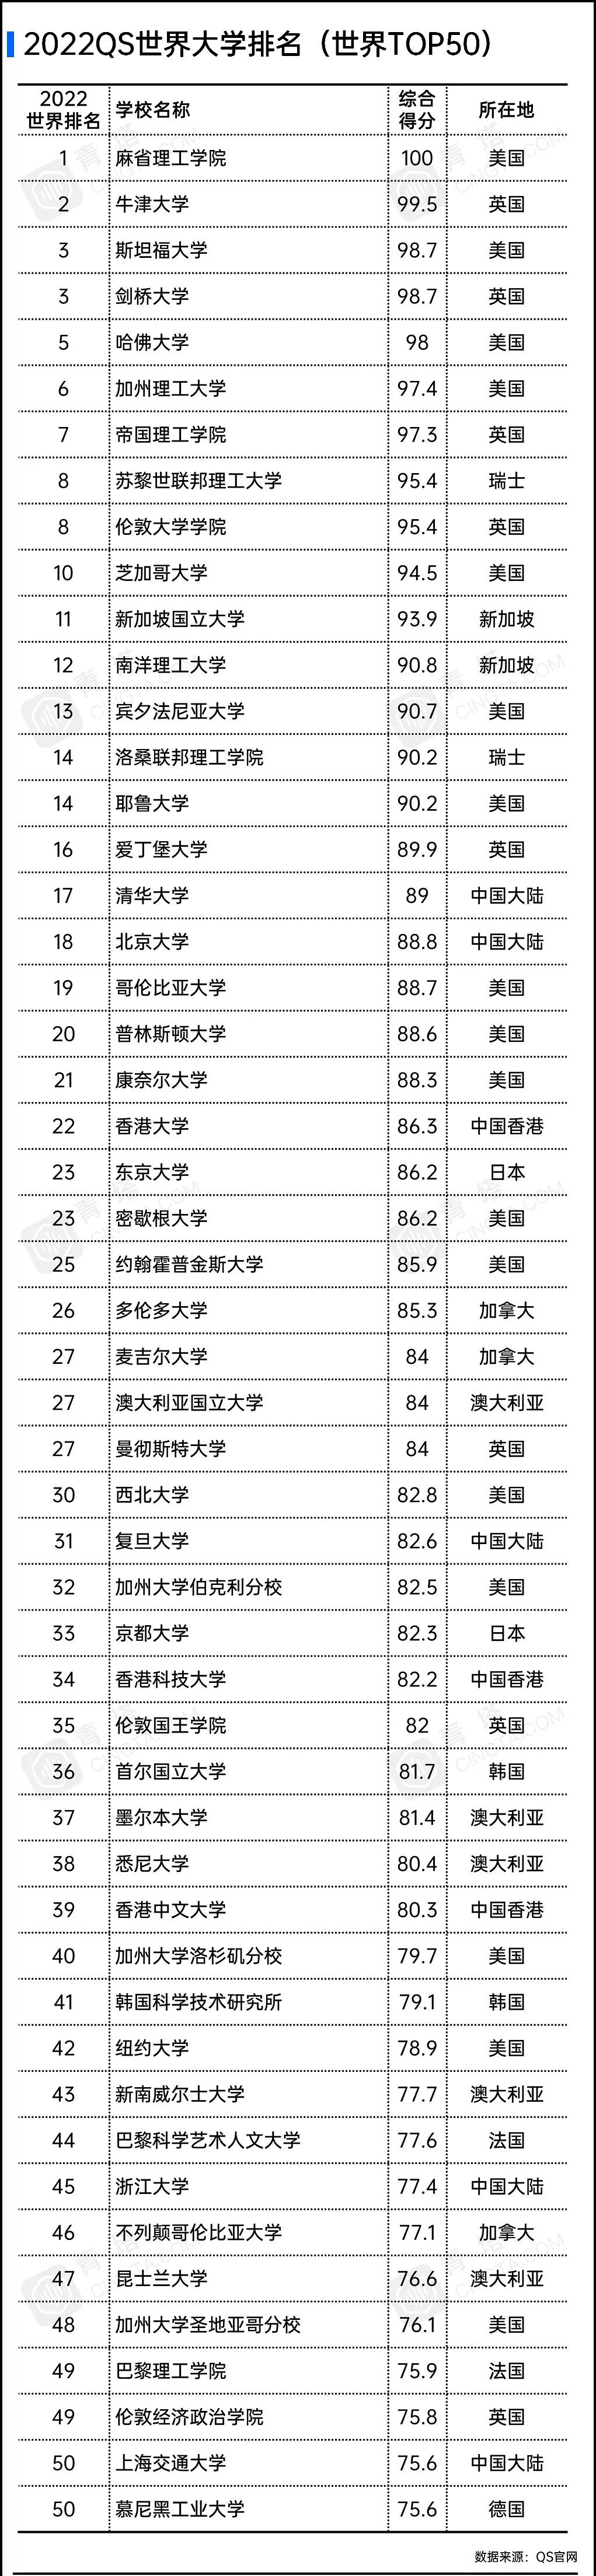 第16届世界大学排名—2020年中国共有66所高校上榜